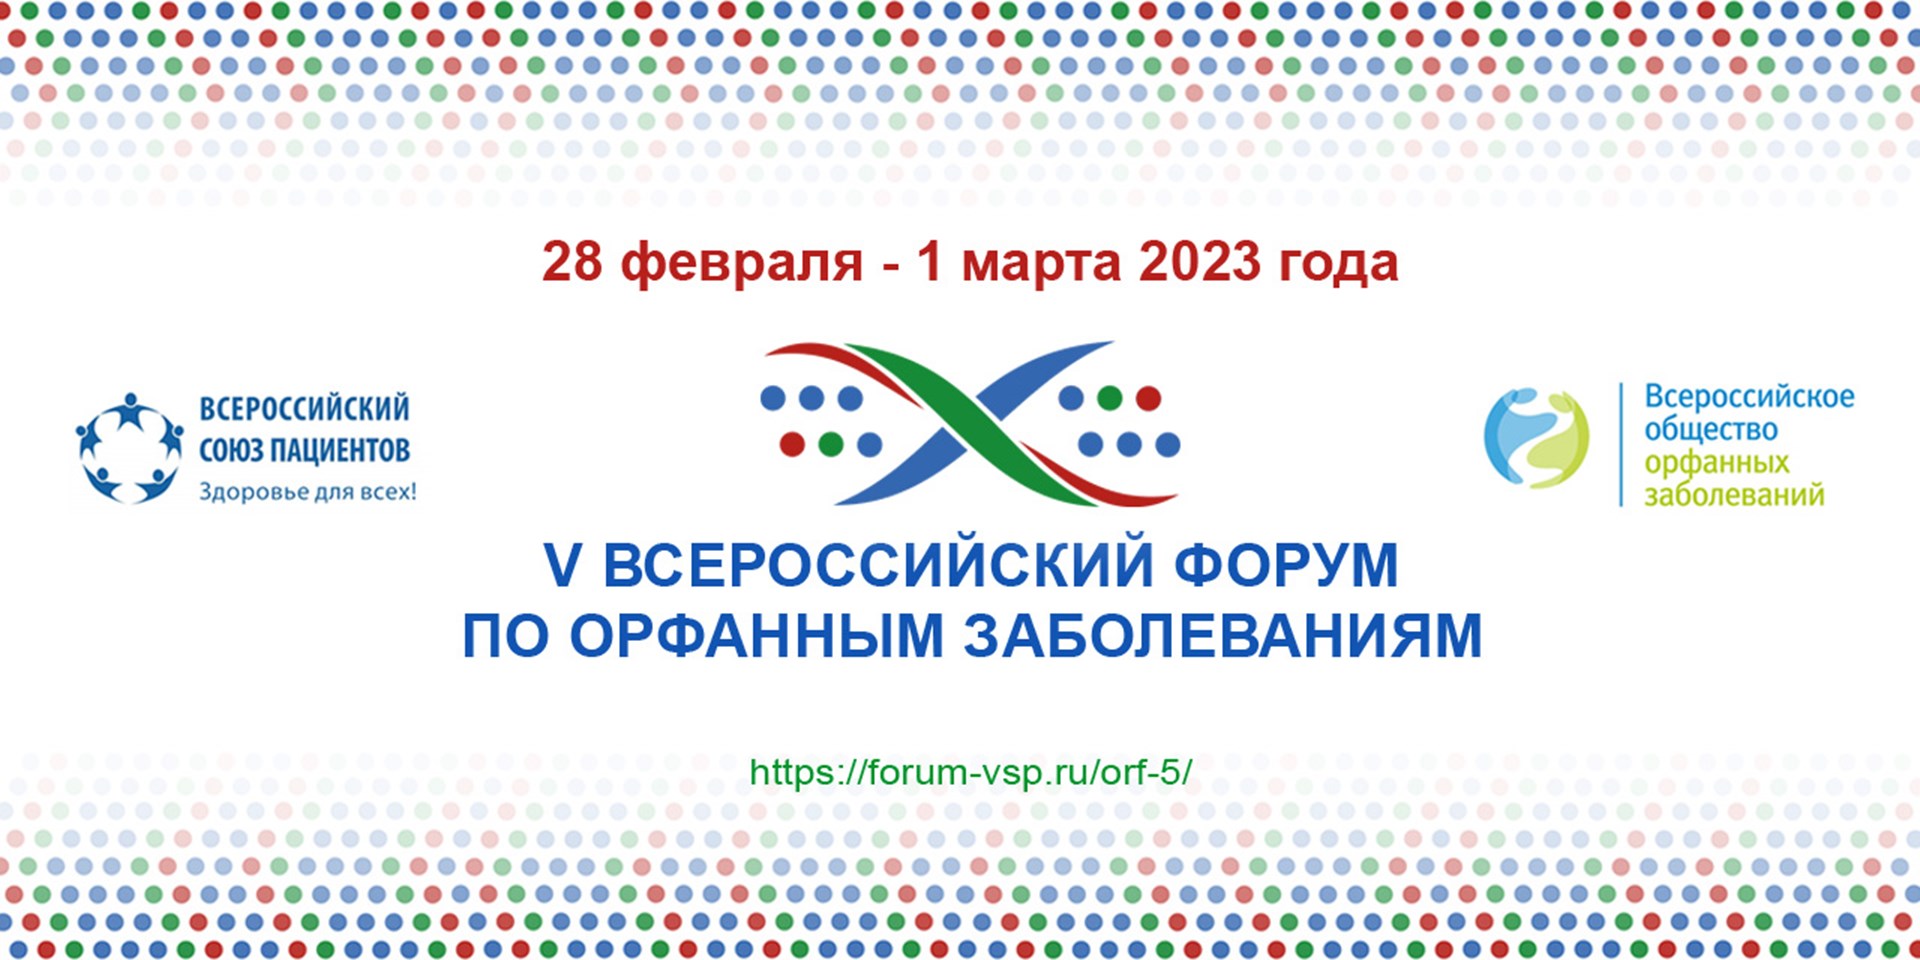 27.01.2023 28 февраля - 1 марта состоится V Всероссийский форум по орфанным заболеваниям